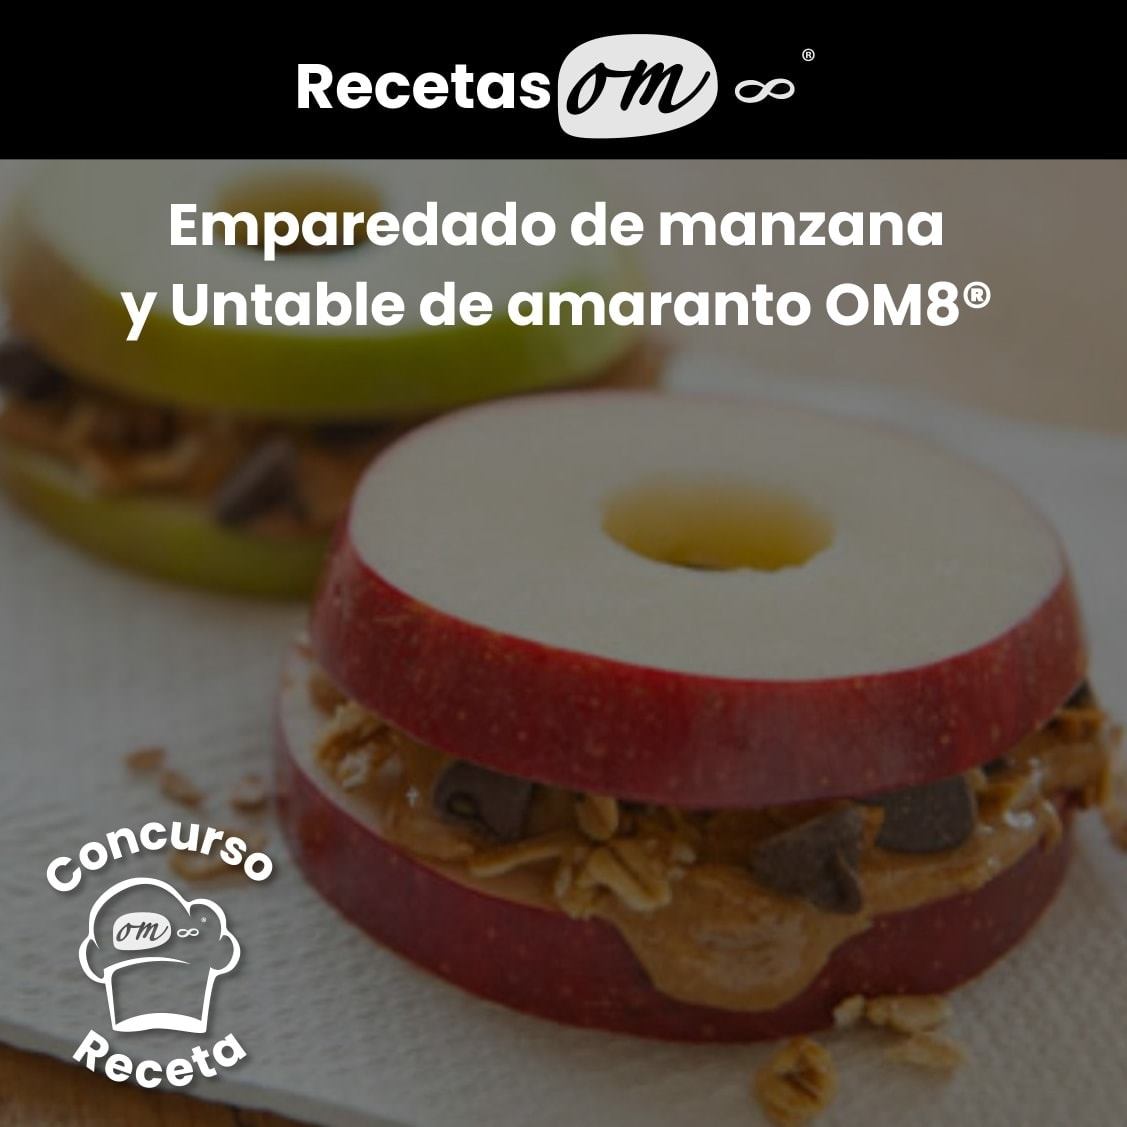 Emparedado de Manzana y Untable de Amaranto OM8®